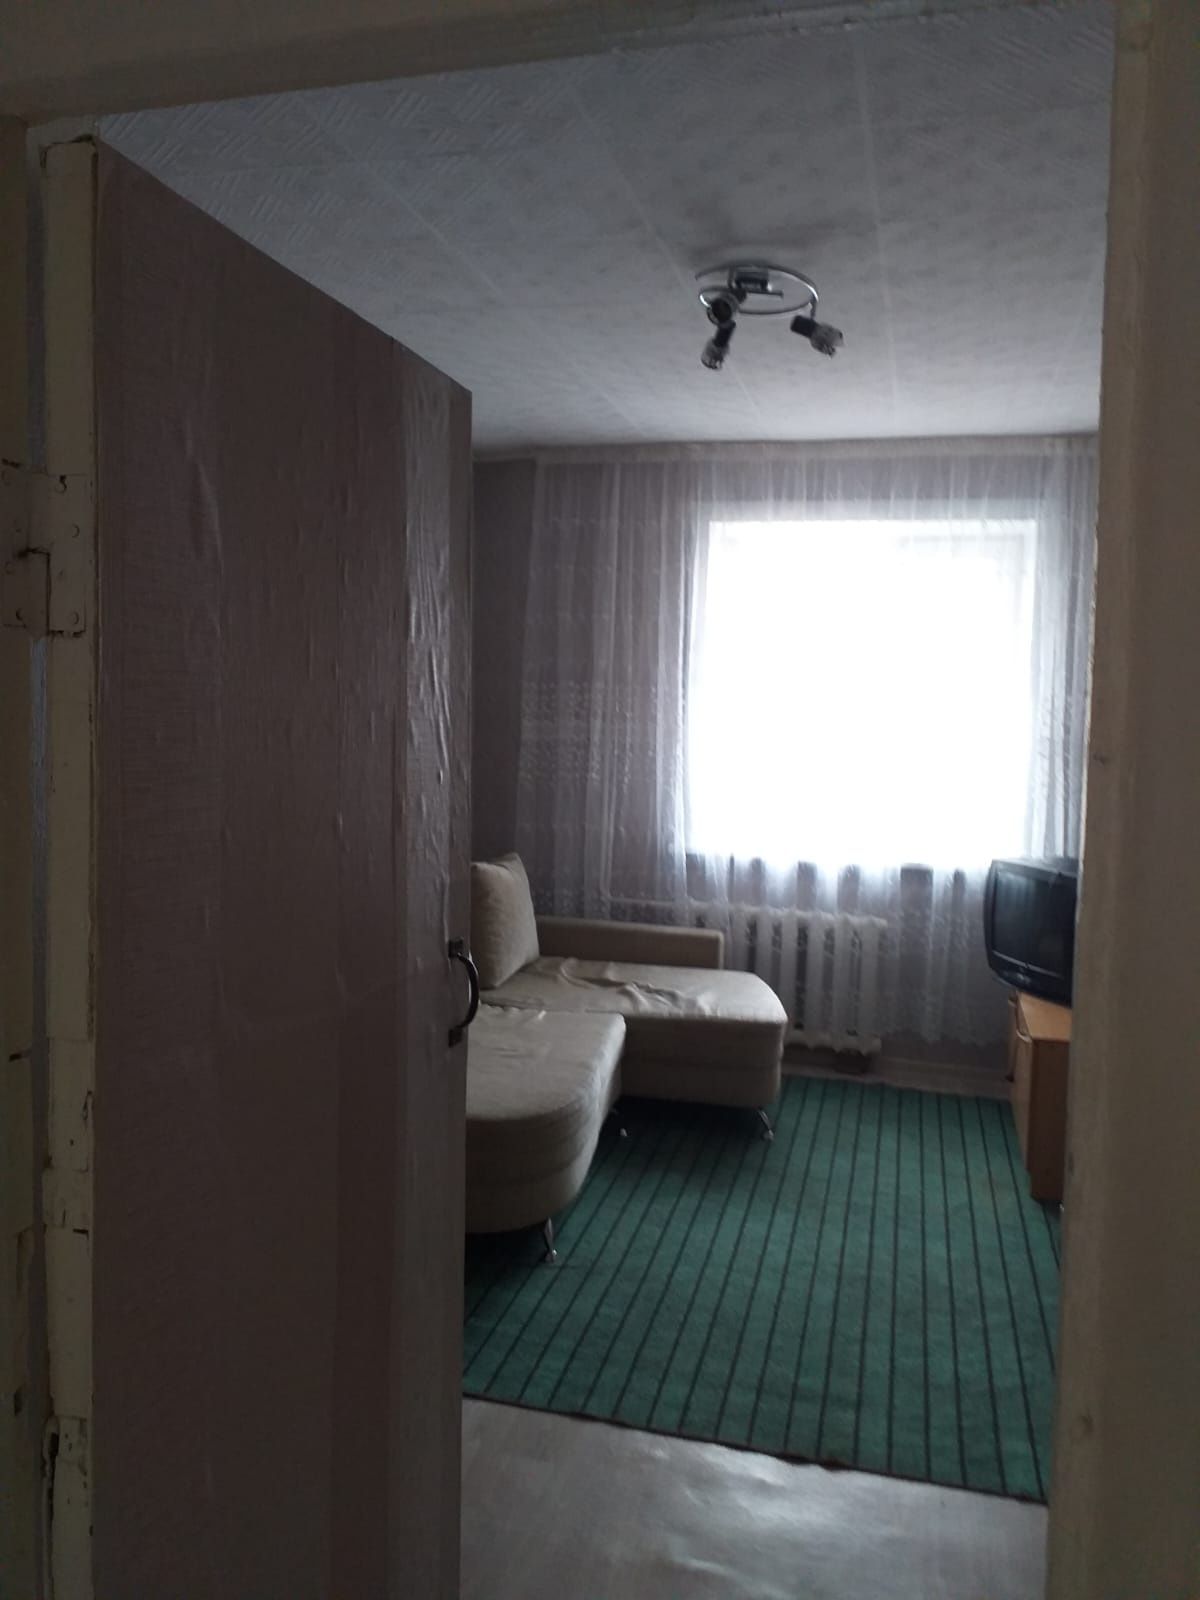 Комната в общежитие секционного типа, 2х комнатная и балкон